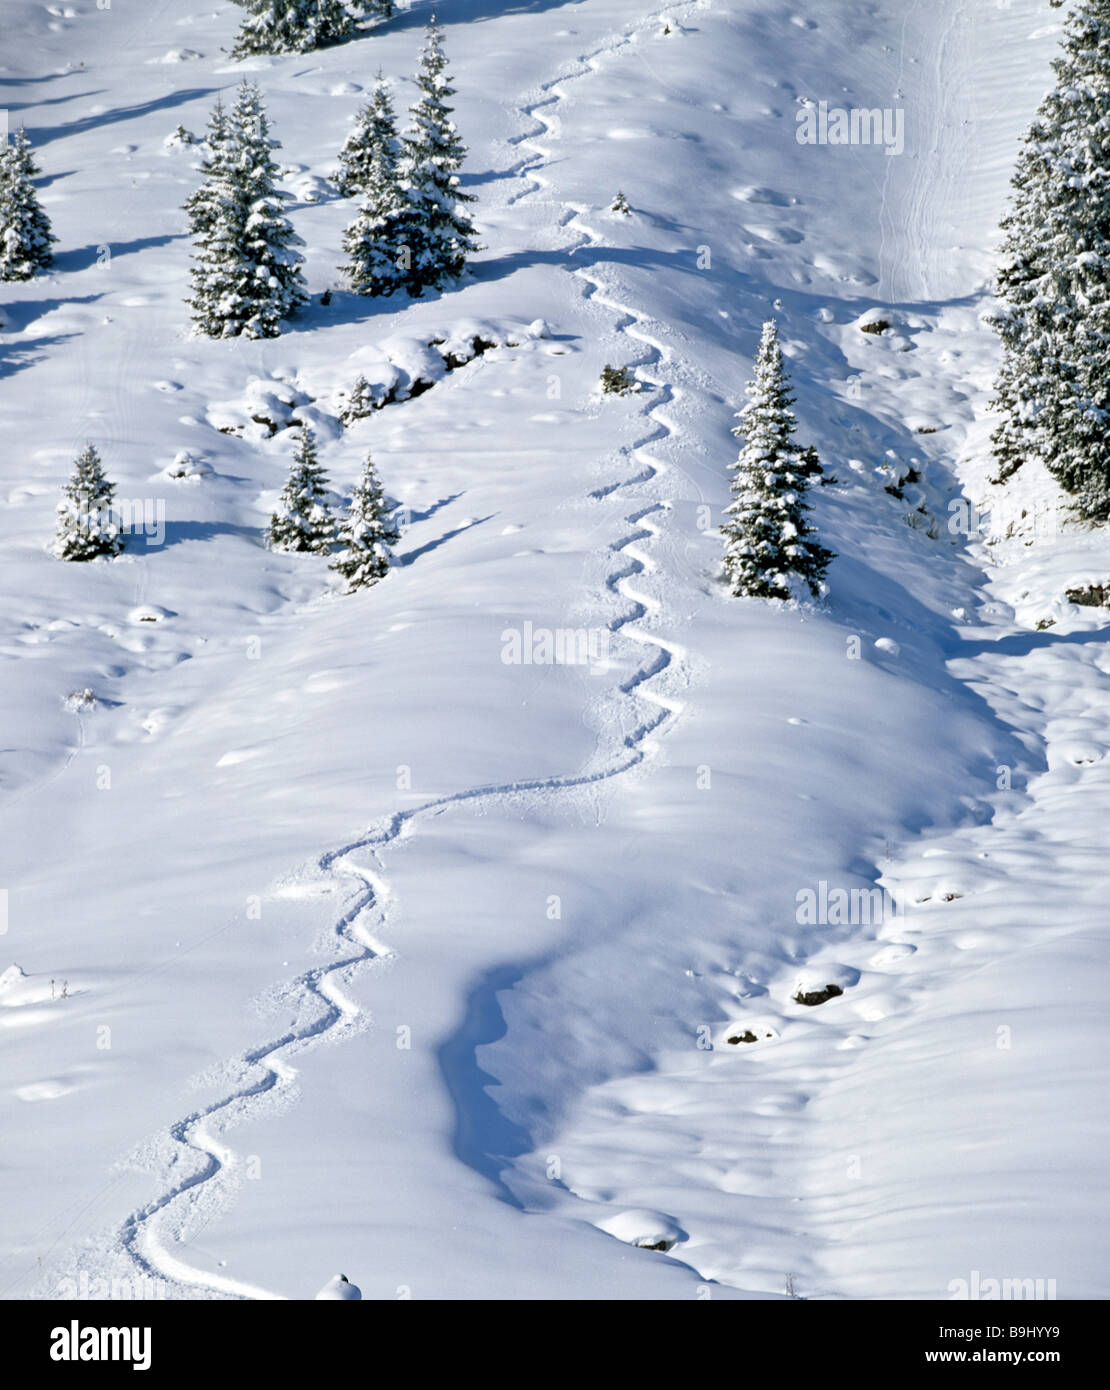 Piste di sci nella neve profonda, wedeling, snoe coperte di paesaggio invernale Foto Stock